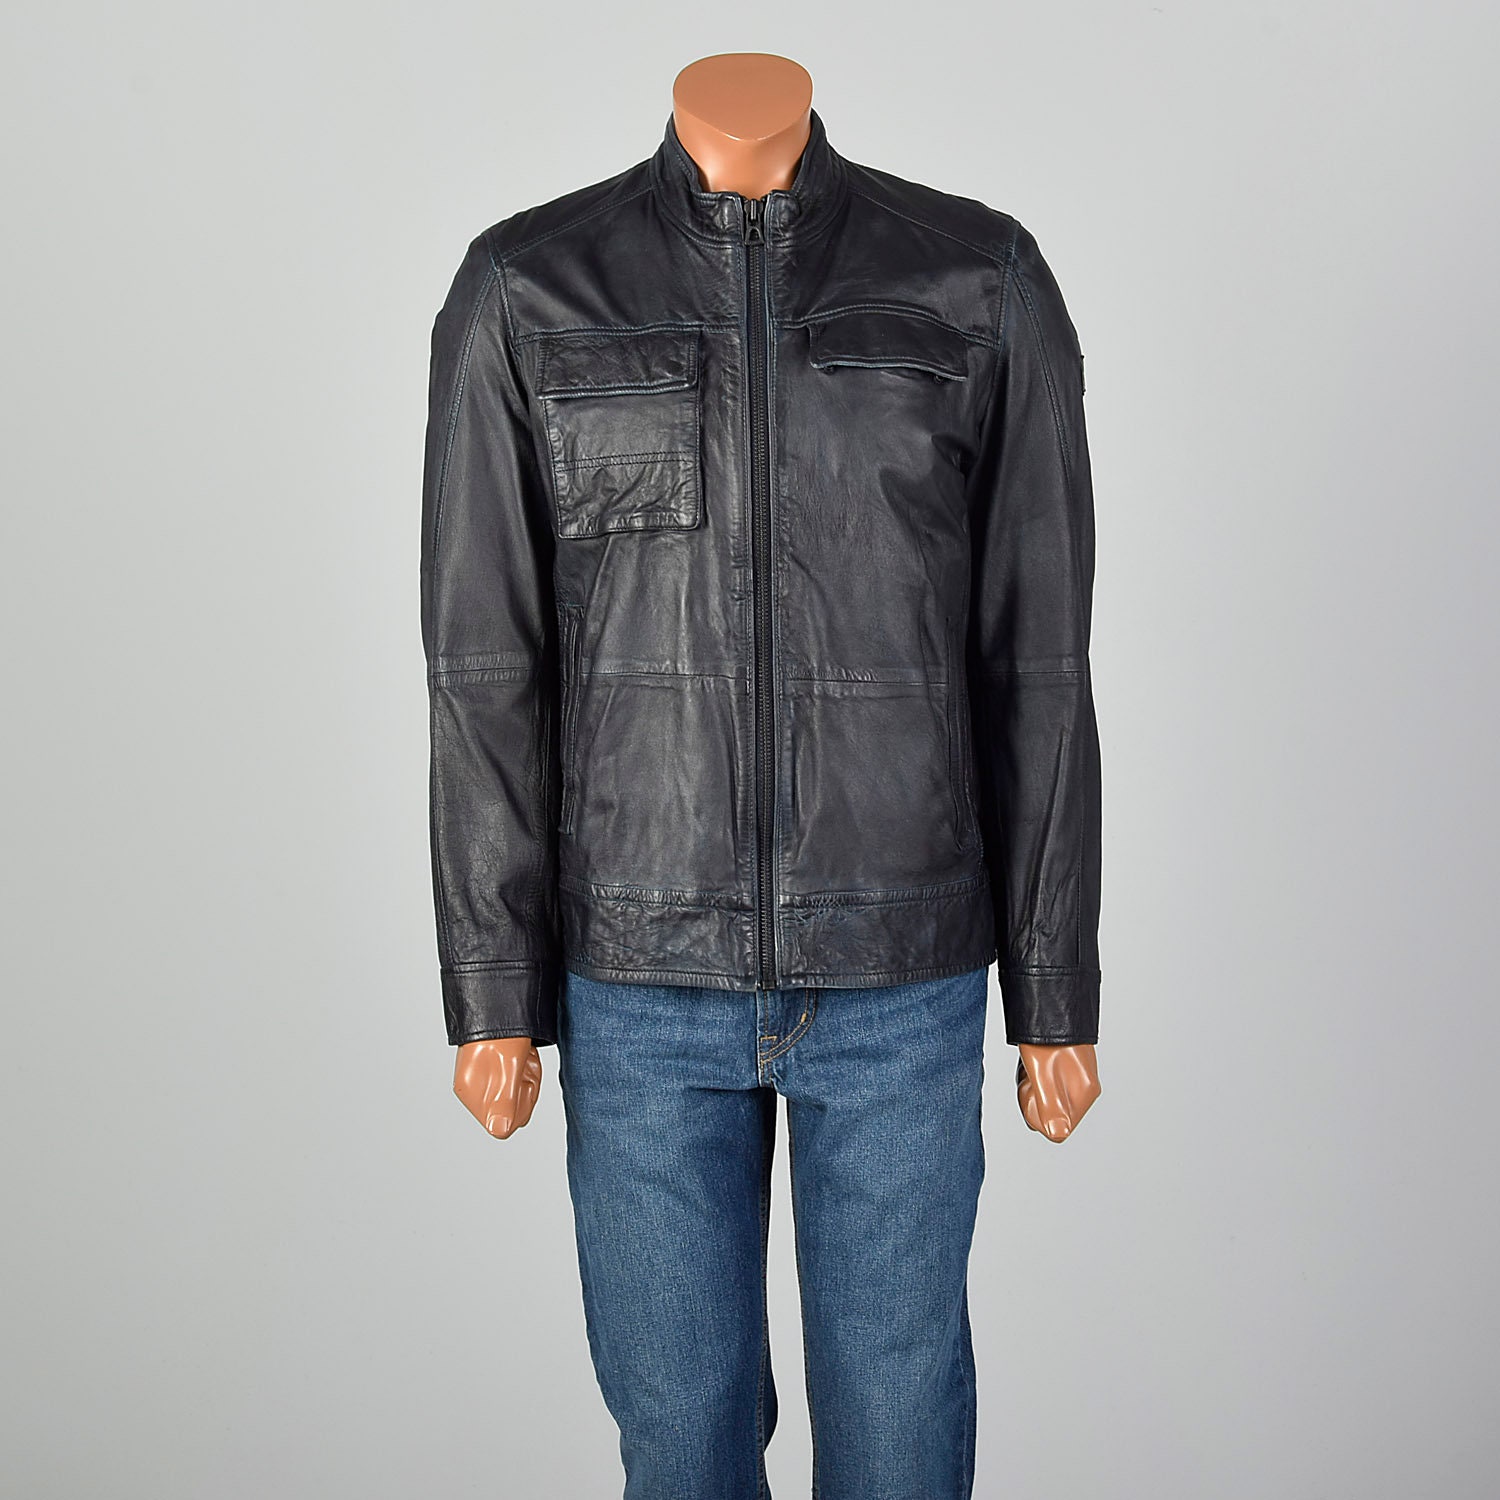 Medium Hugo Boss Leather Jacket Navy Cafe Racer Motorcycle | Etsy